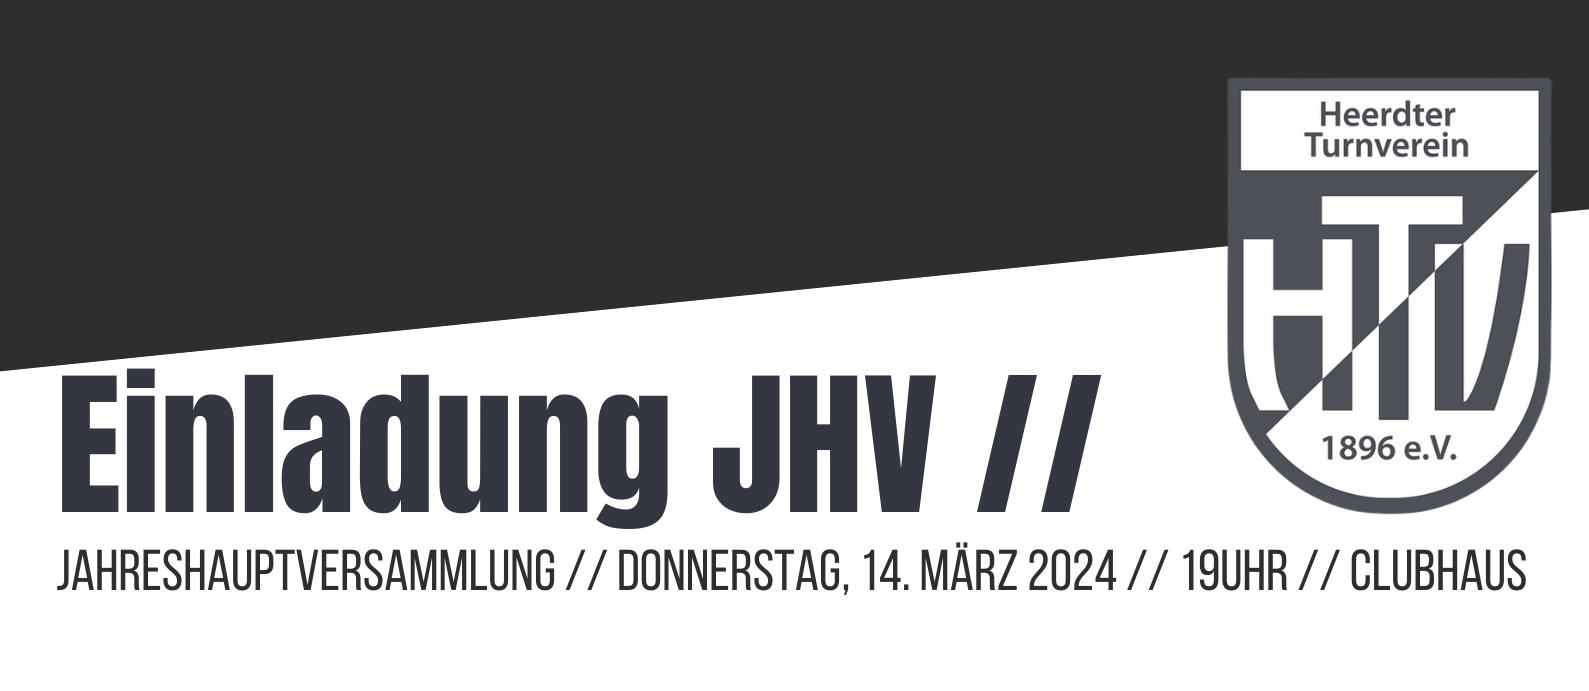 Einladung JHV 2024